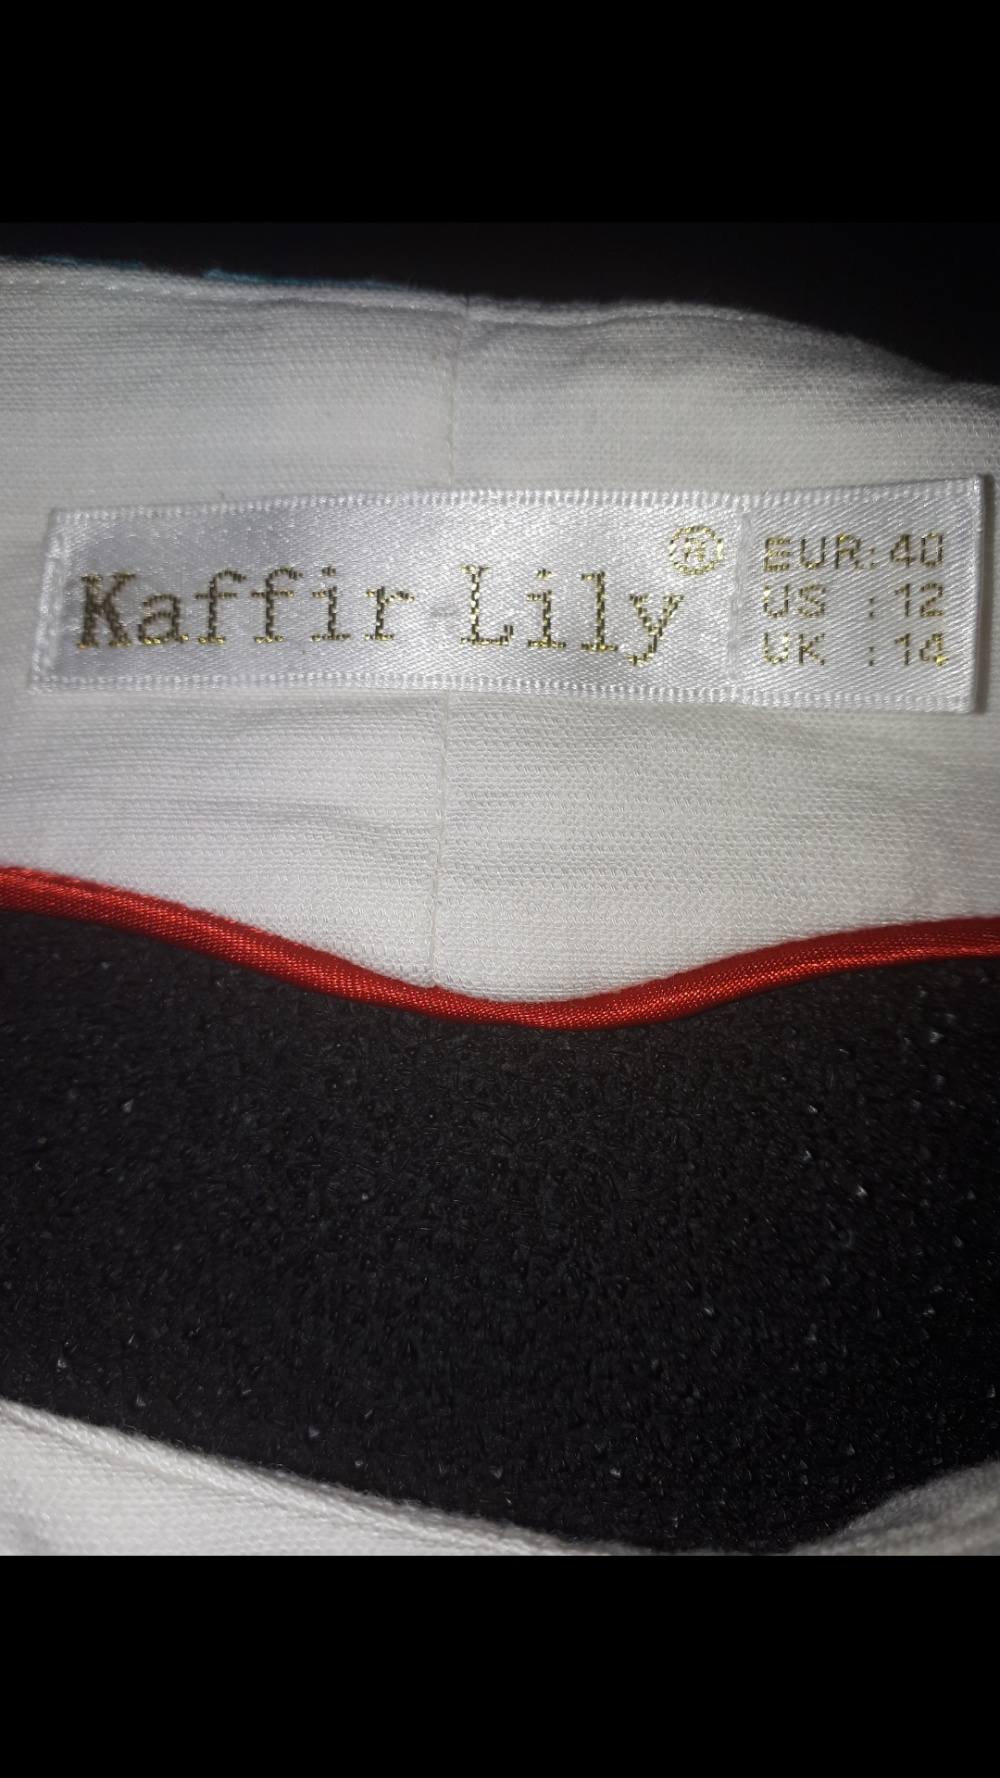 Платье Kaffir Lily 40 евро р-р